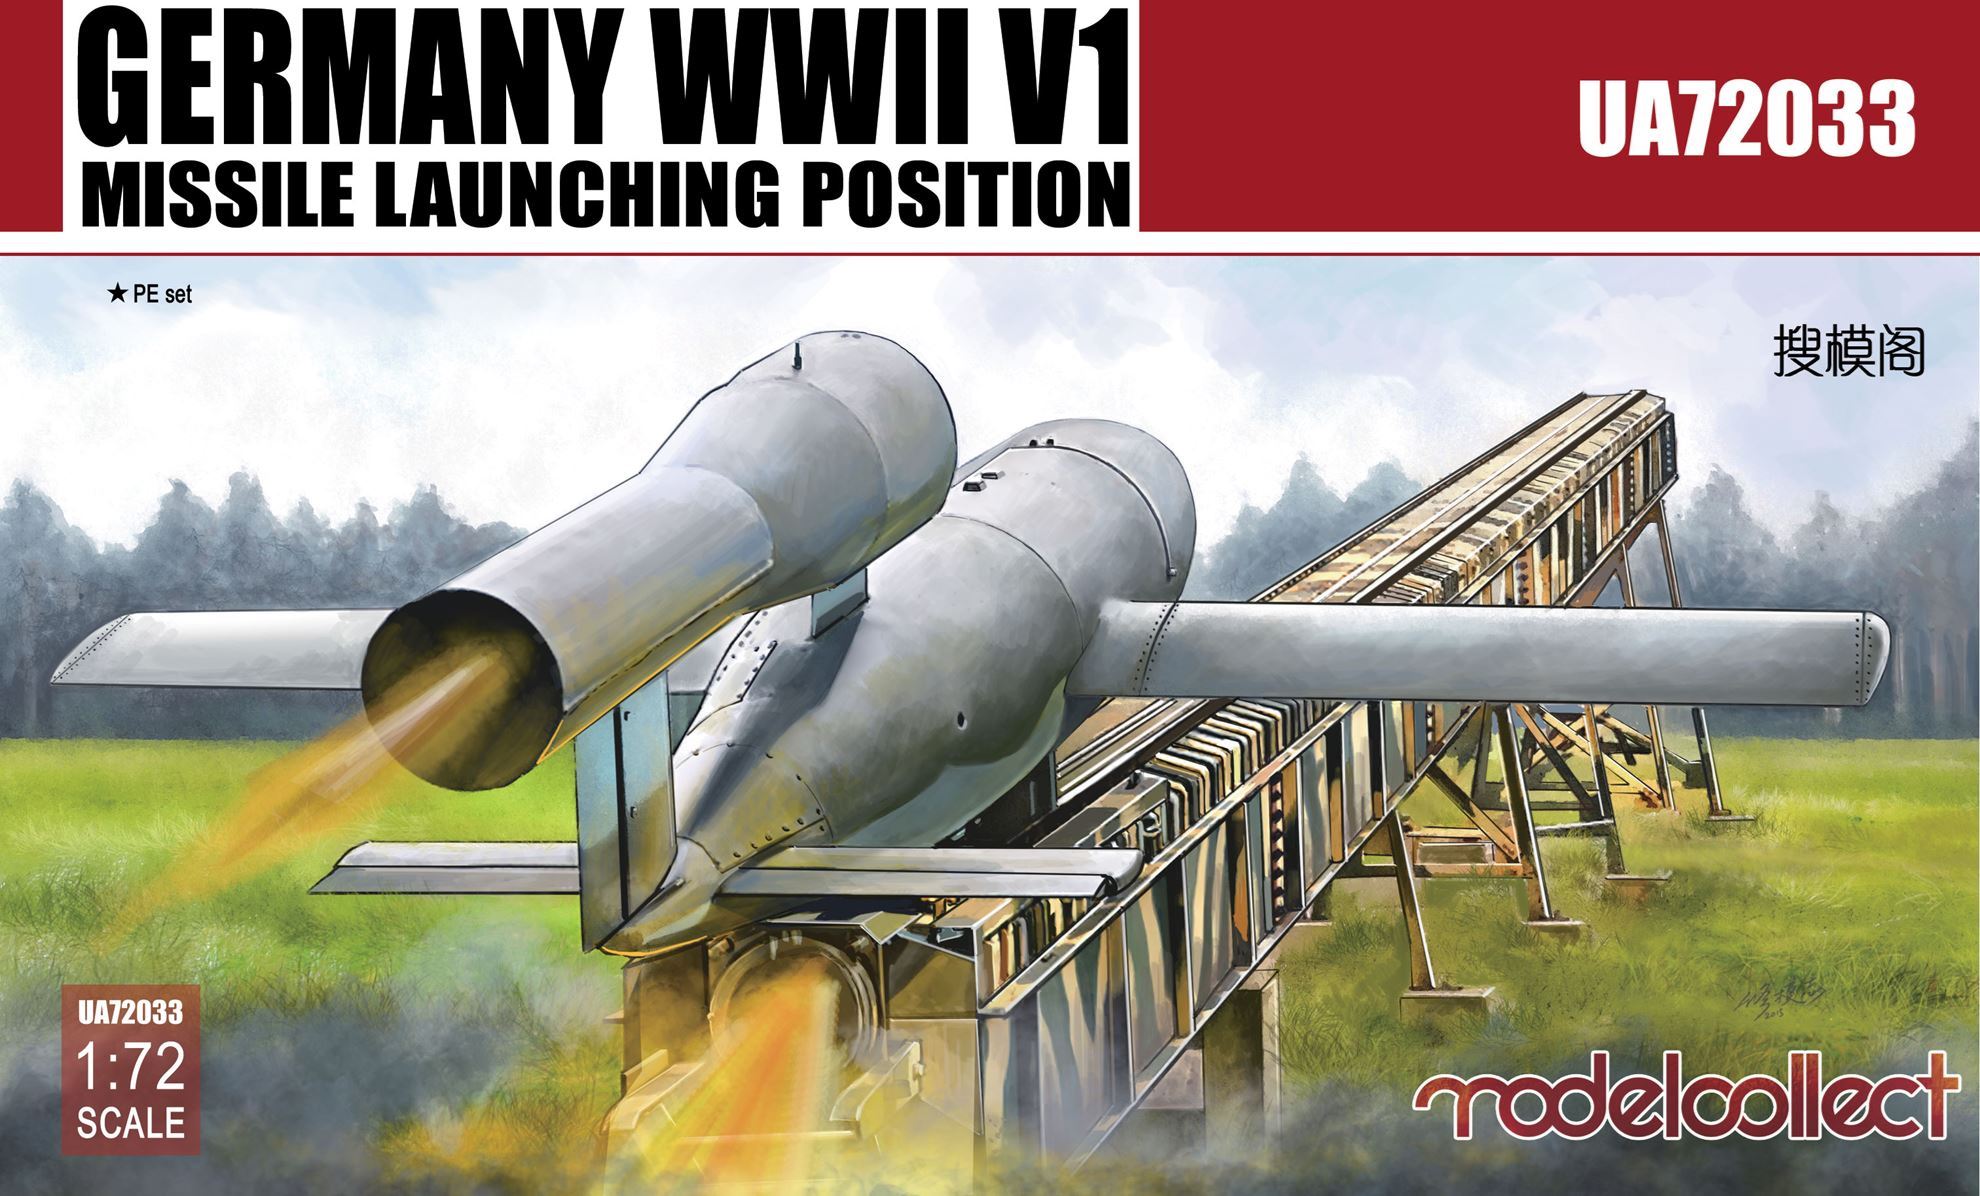 UA72033  техника и вооружение  Germany WWII V1 Missile launching position  (1:72)